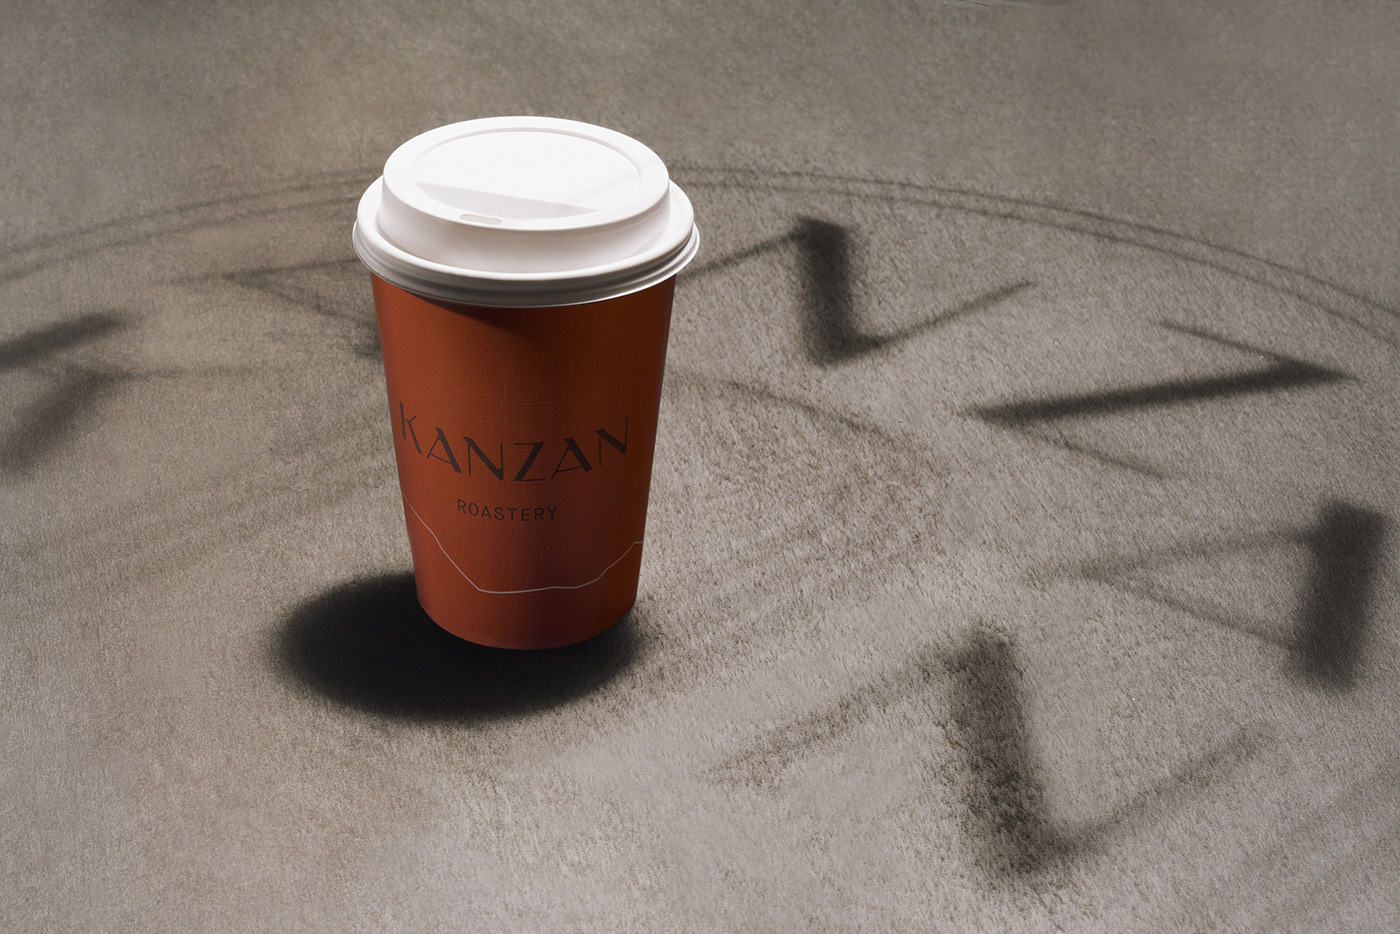 branding  byFutura coffee shop editorial Futura kanzan